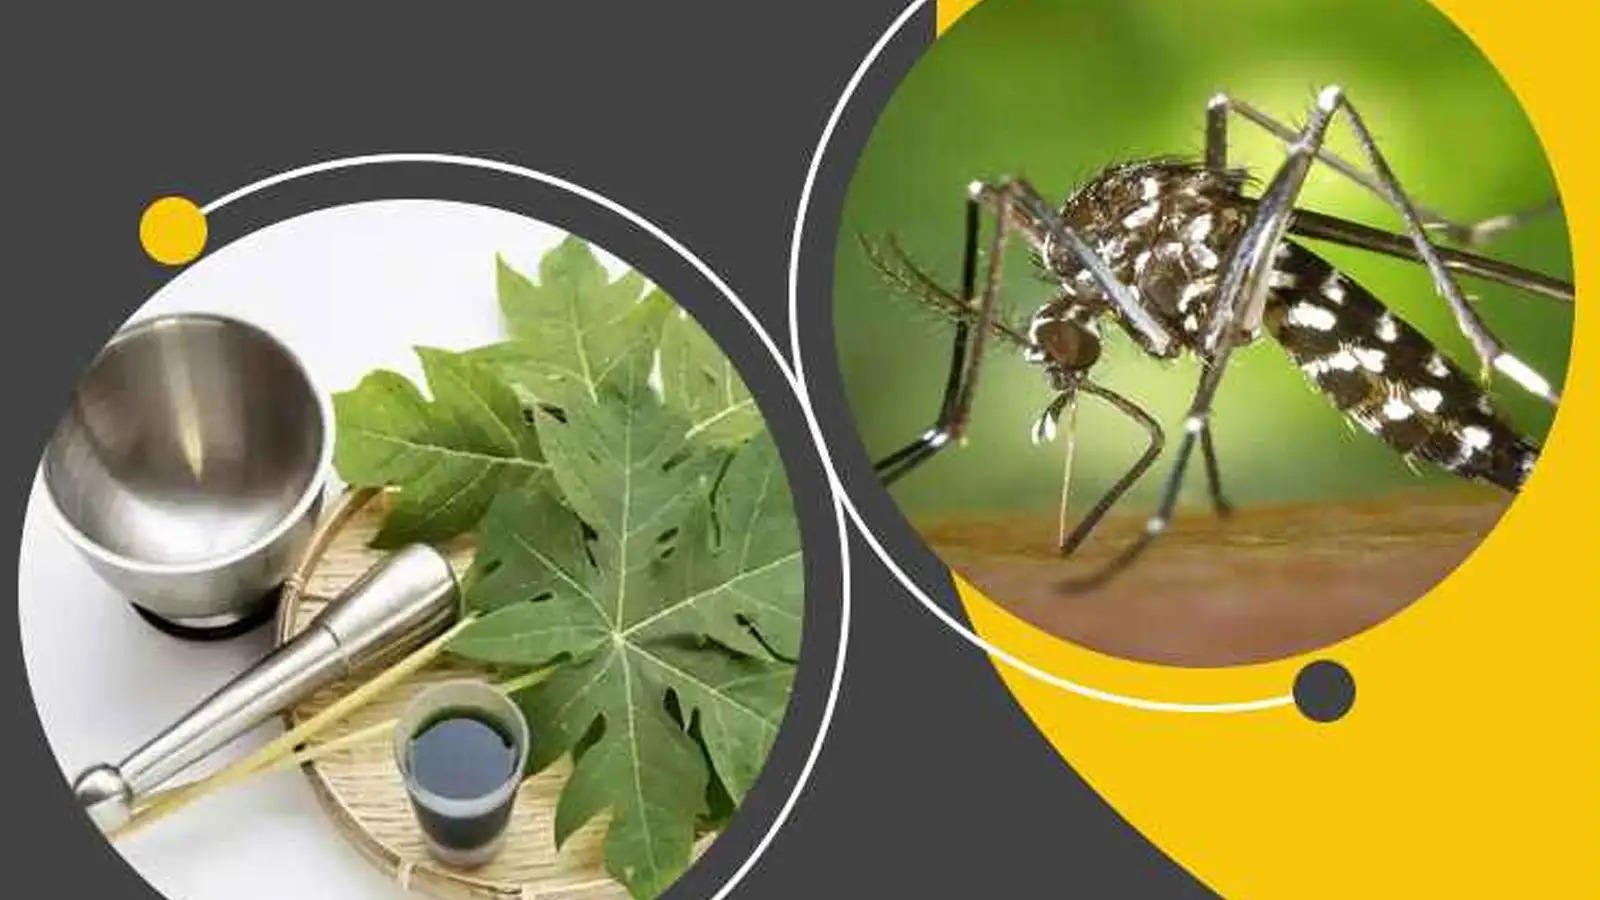 Dengue Ayurvedic Remedies : इन आयुर्वेदिक उपायों से कम करें डेंगू के लक्षण, नहीं लगाने पड़ेंगे अस्पताल के चक्कर 